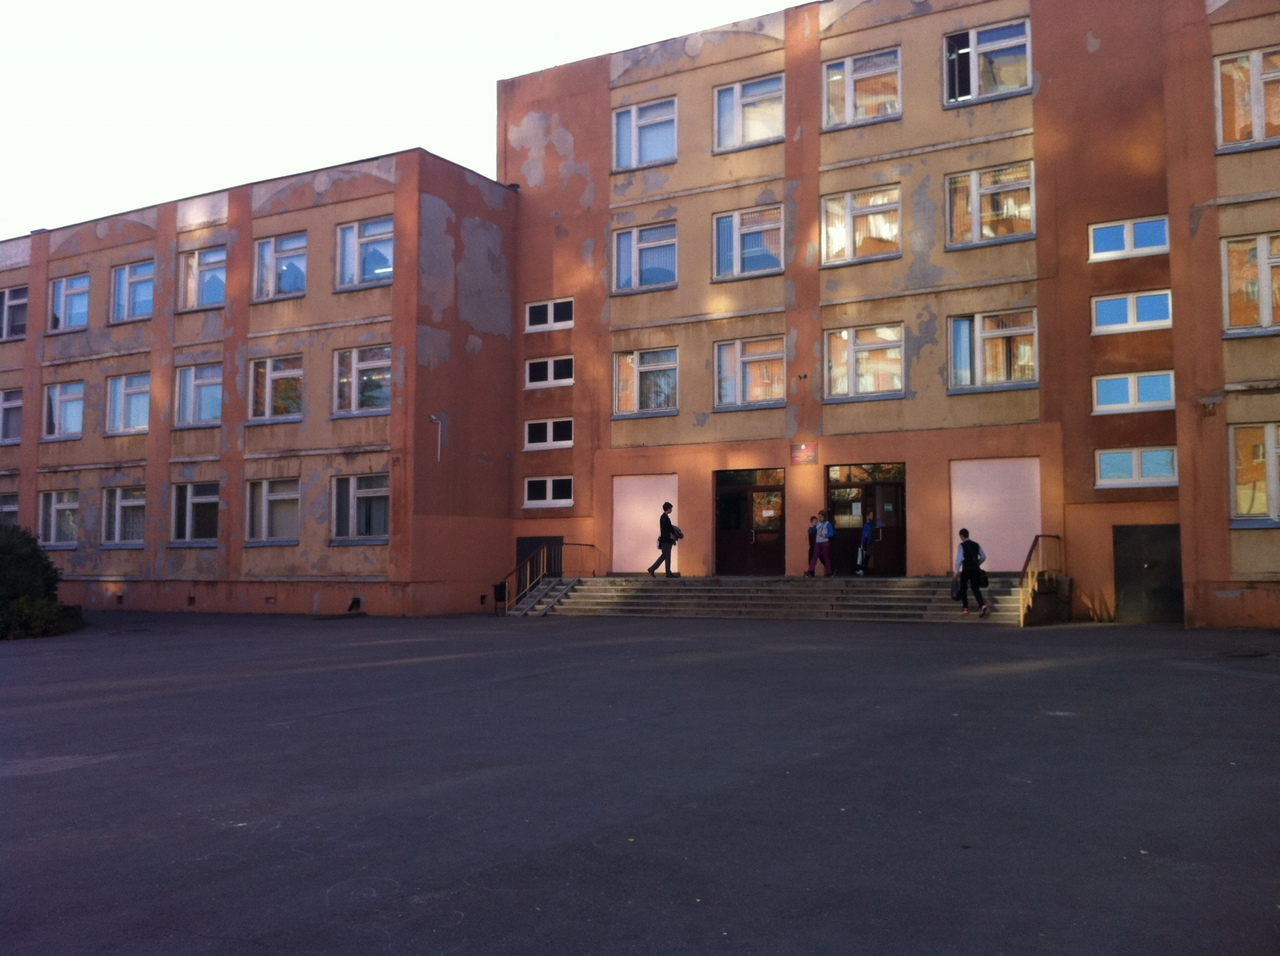 В школах Нижегородской области усилят безопасность после теракта в Казани